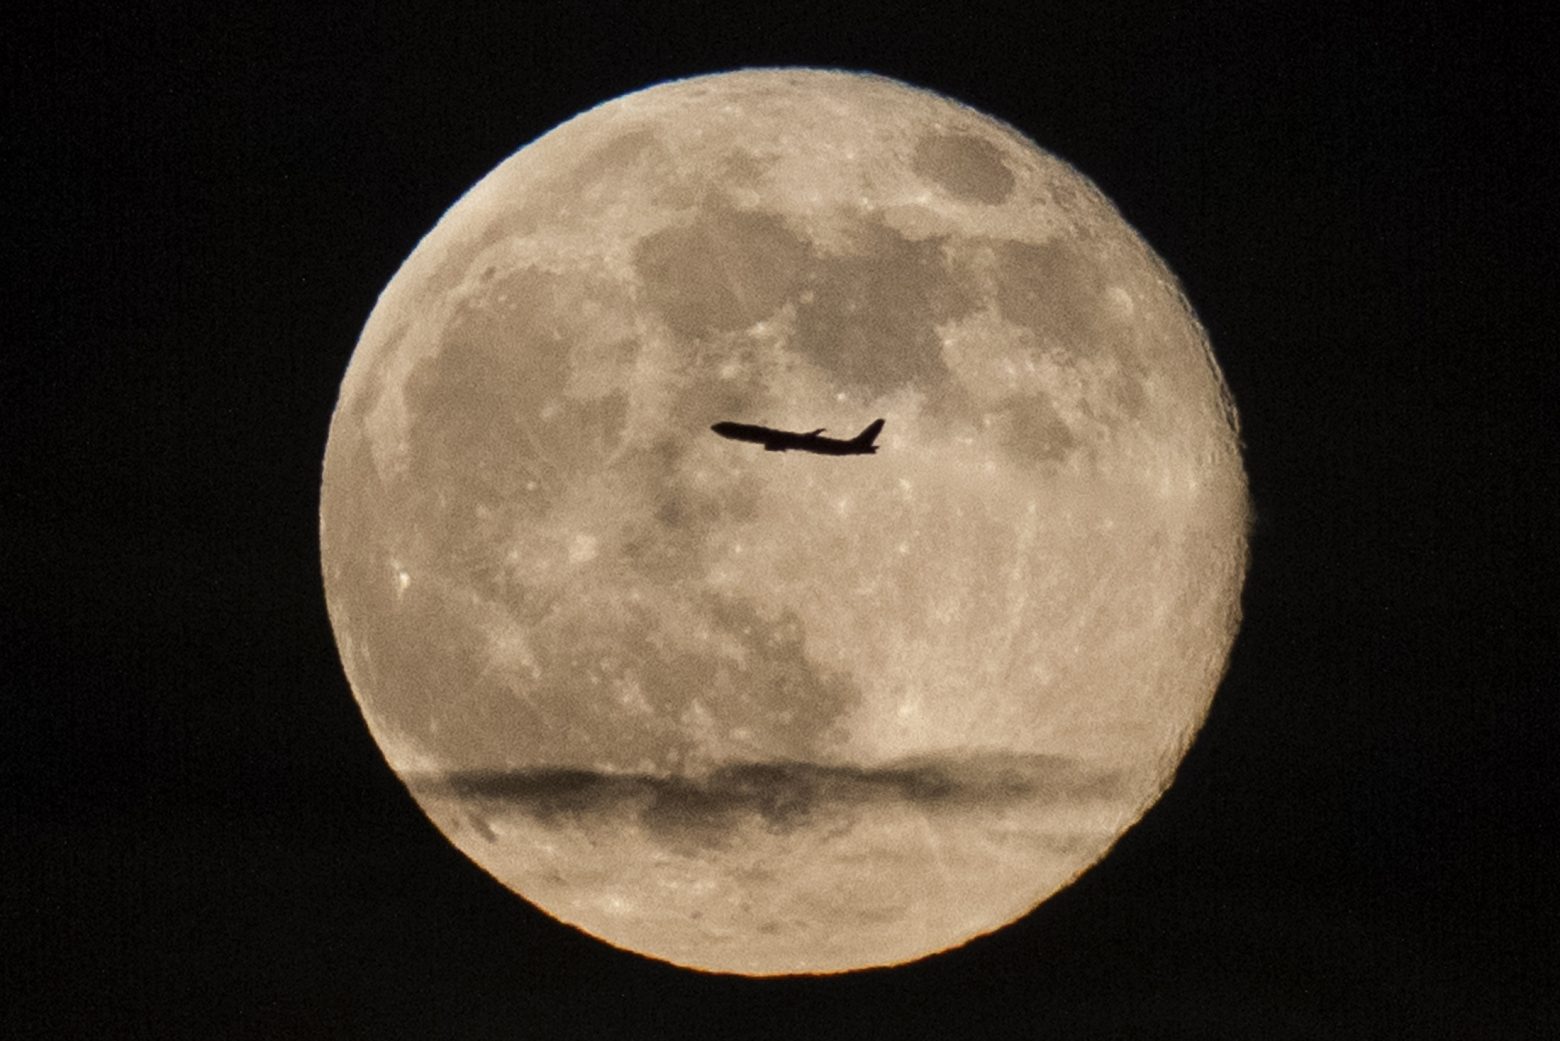 Ισραηλινή εταιρεία σε δεύτερη απόπειρα προσεδάφισης στη Σελήνη